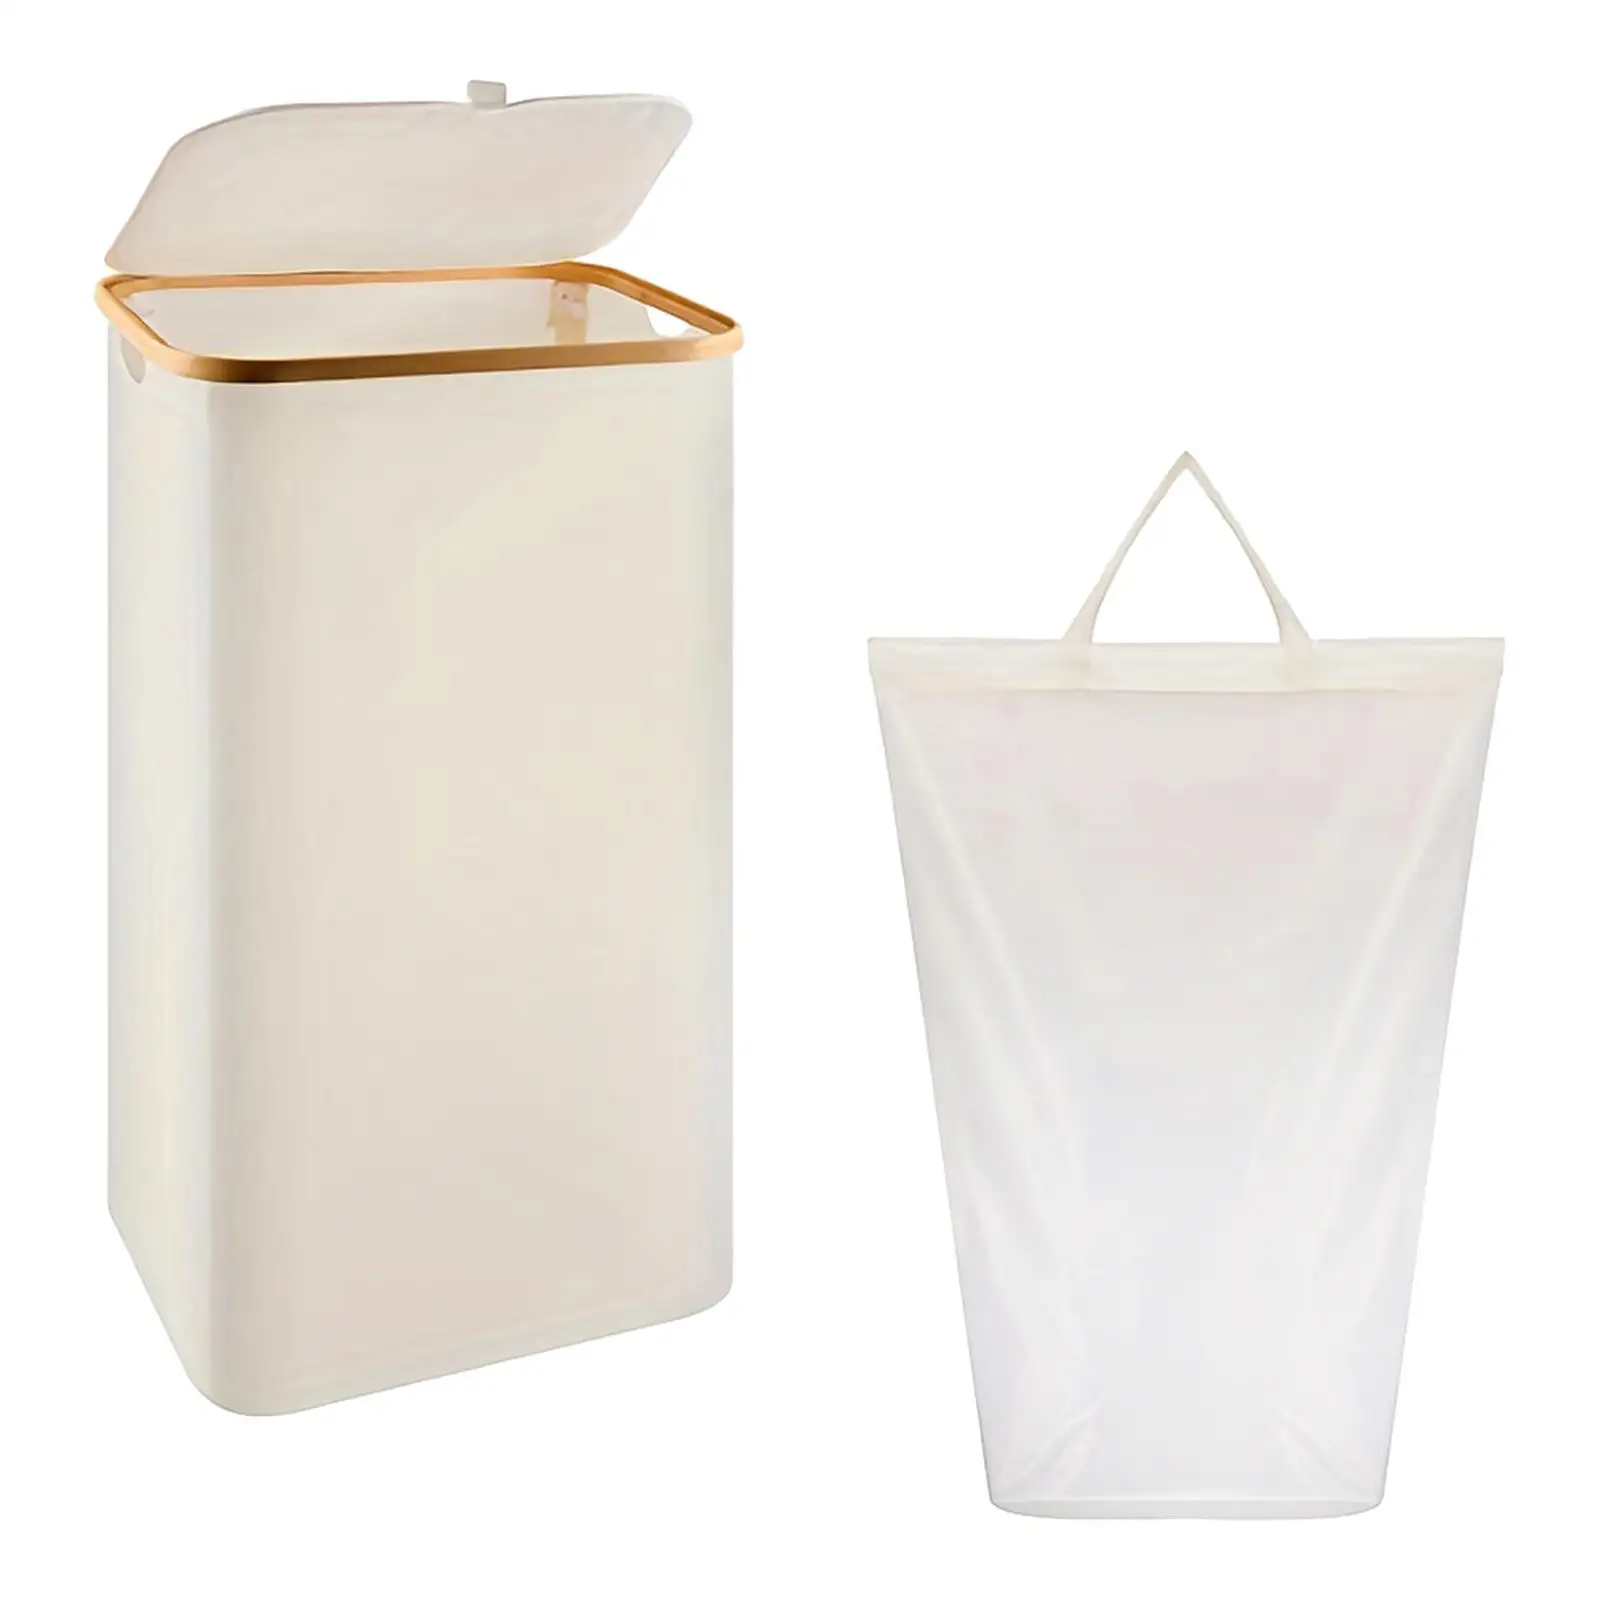 Storage Basket for Blanket Folding Tall Laundry Basket for Bathroom Bedroom